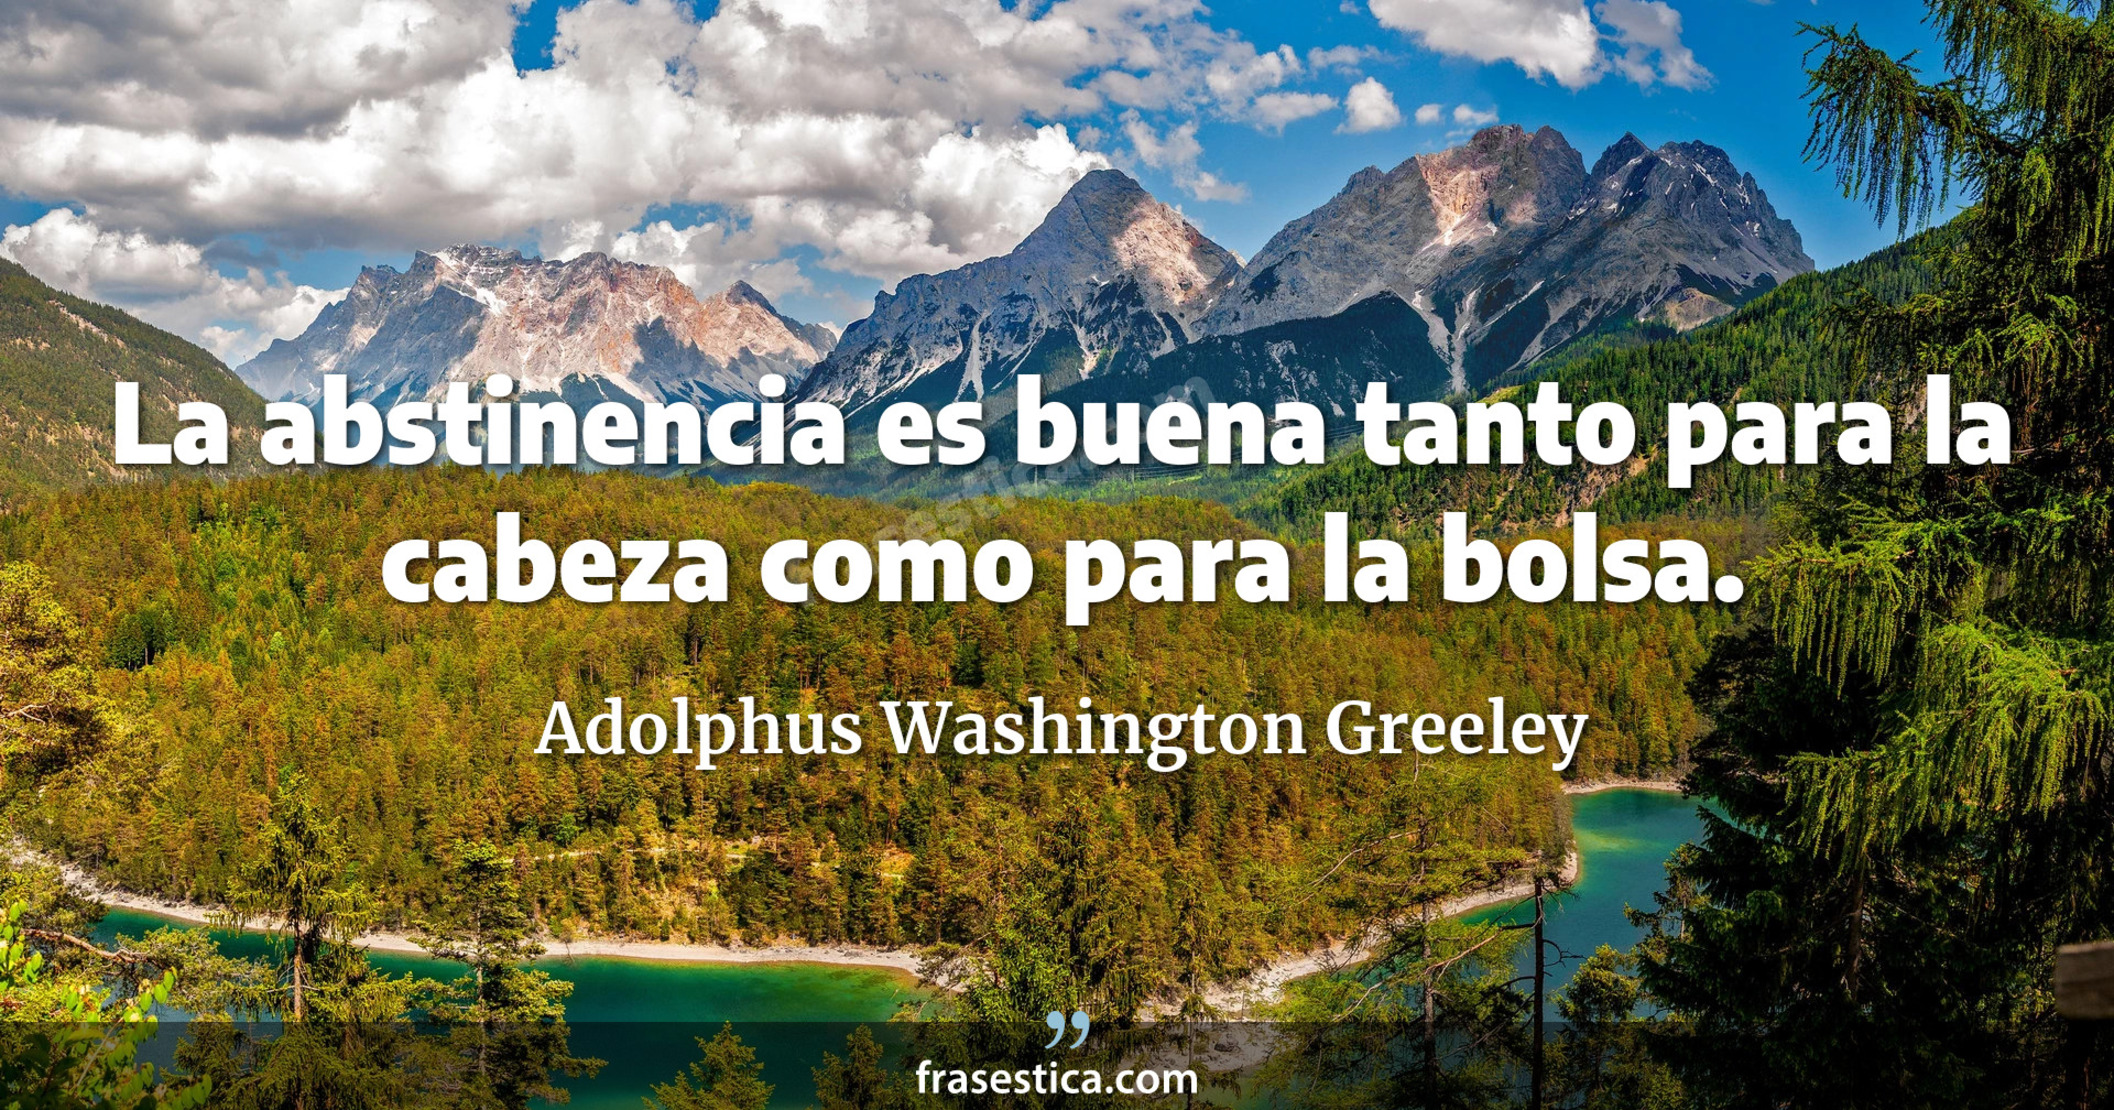 La abstinencia es buena tanto para la cabeza como para la bolsa. - Adolphus Washington Greeley